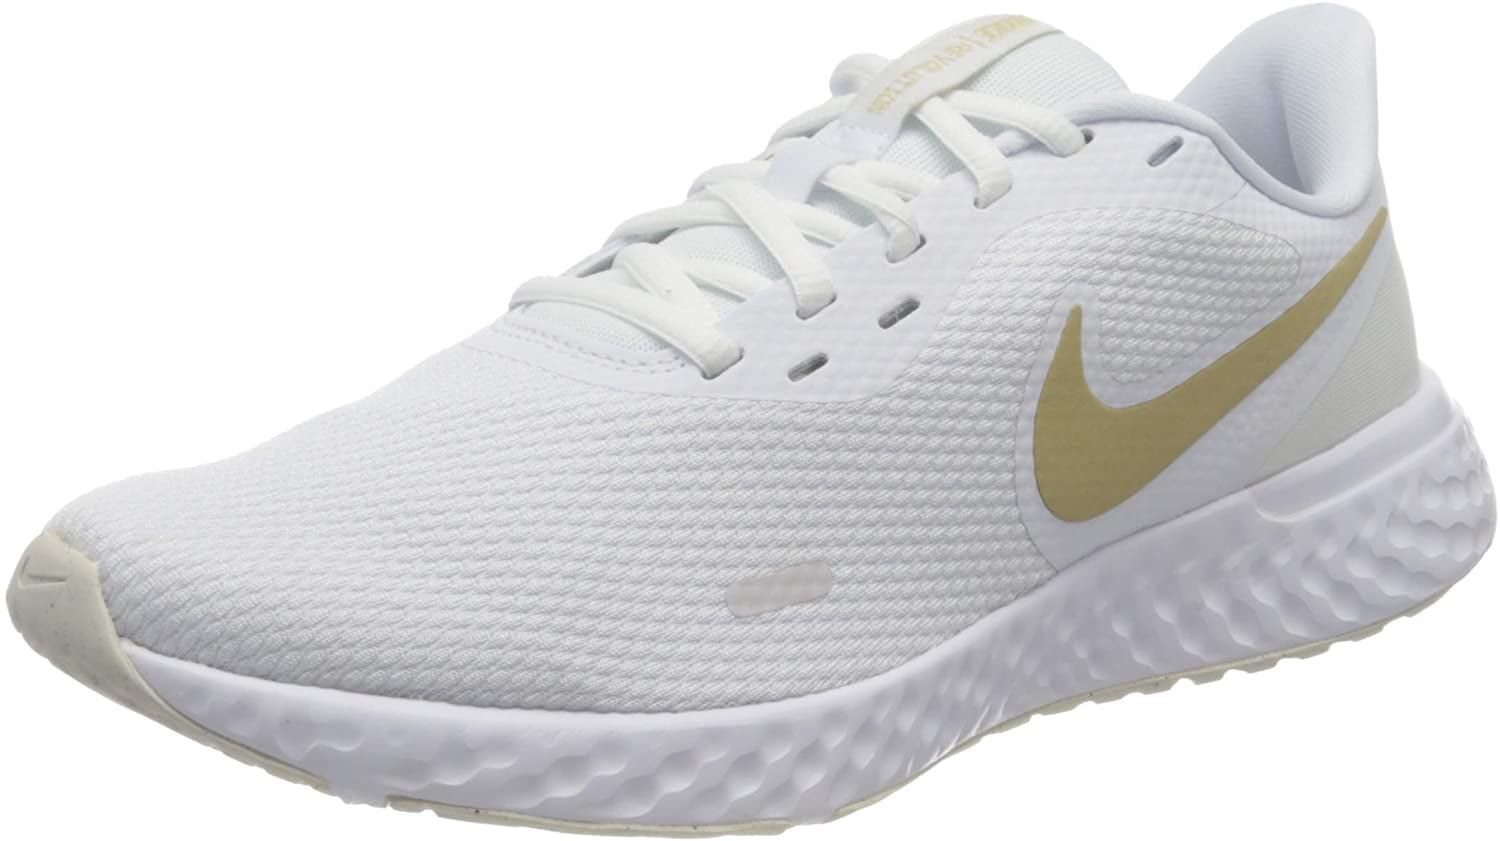 Nike Women's Revolution 5 Running Shoe White/Gold, 8.5